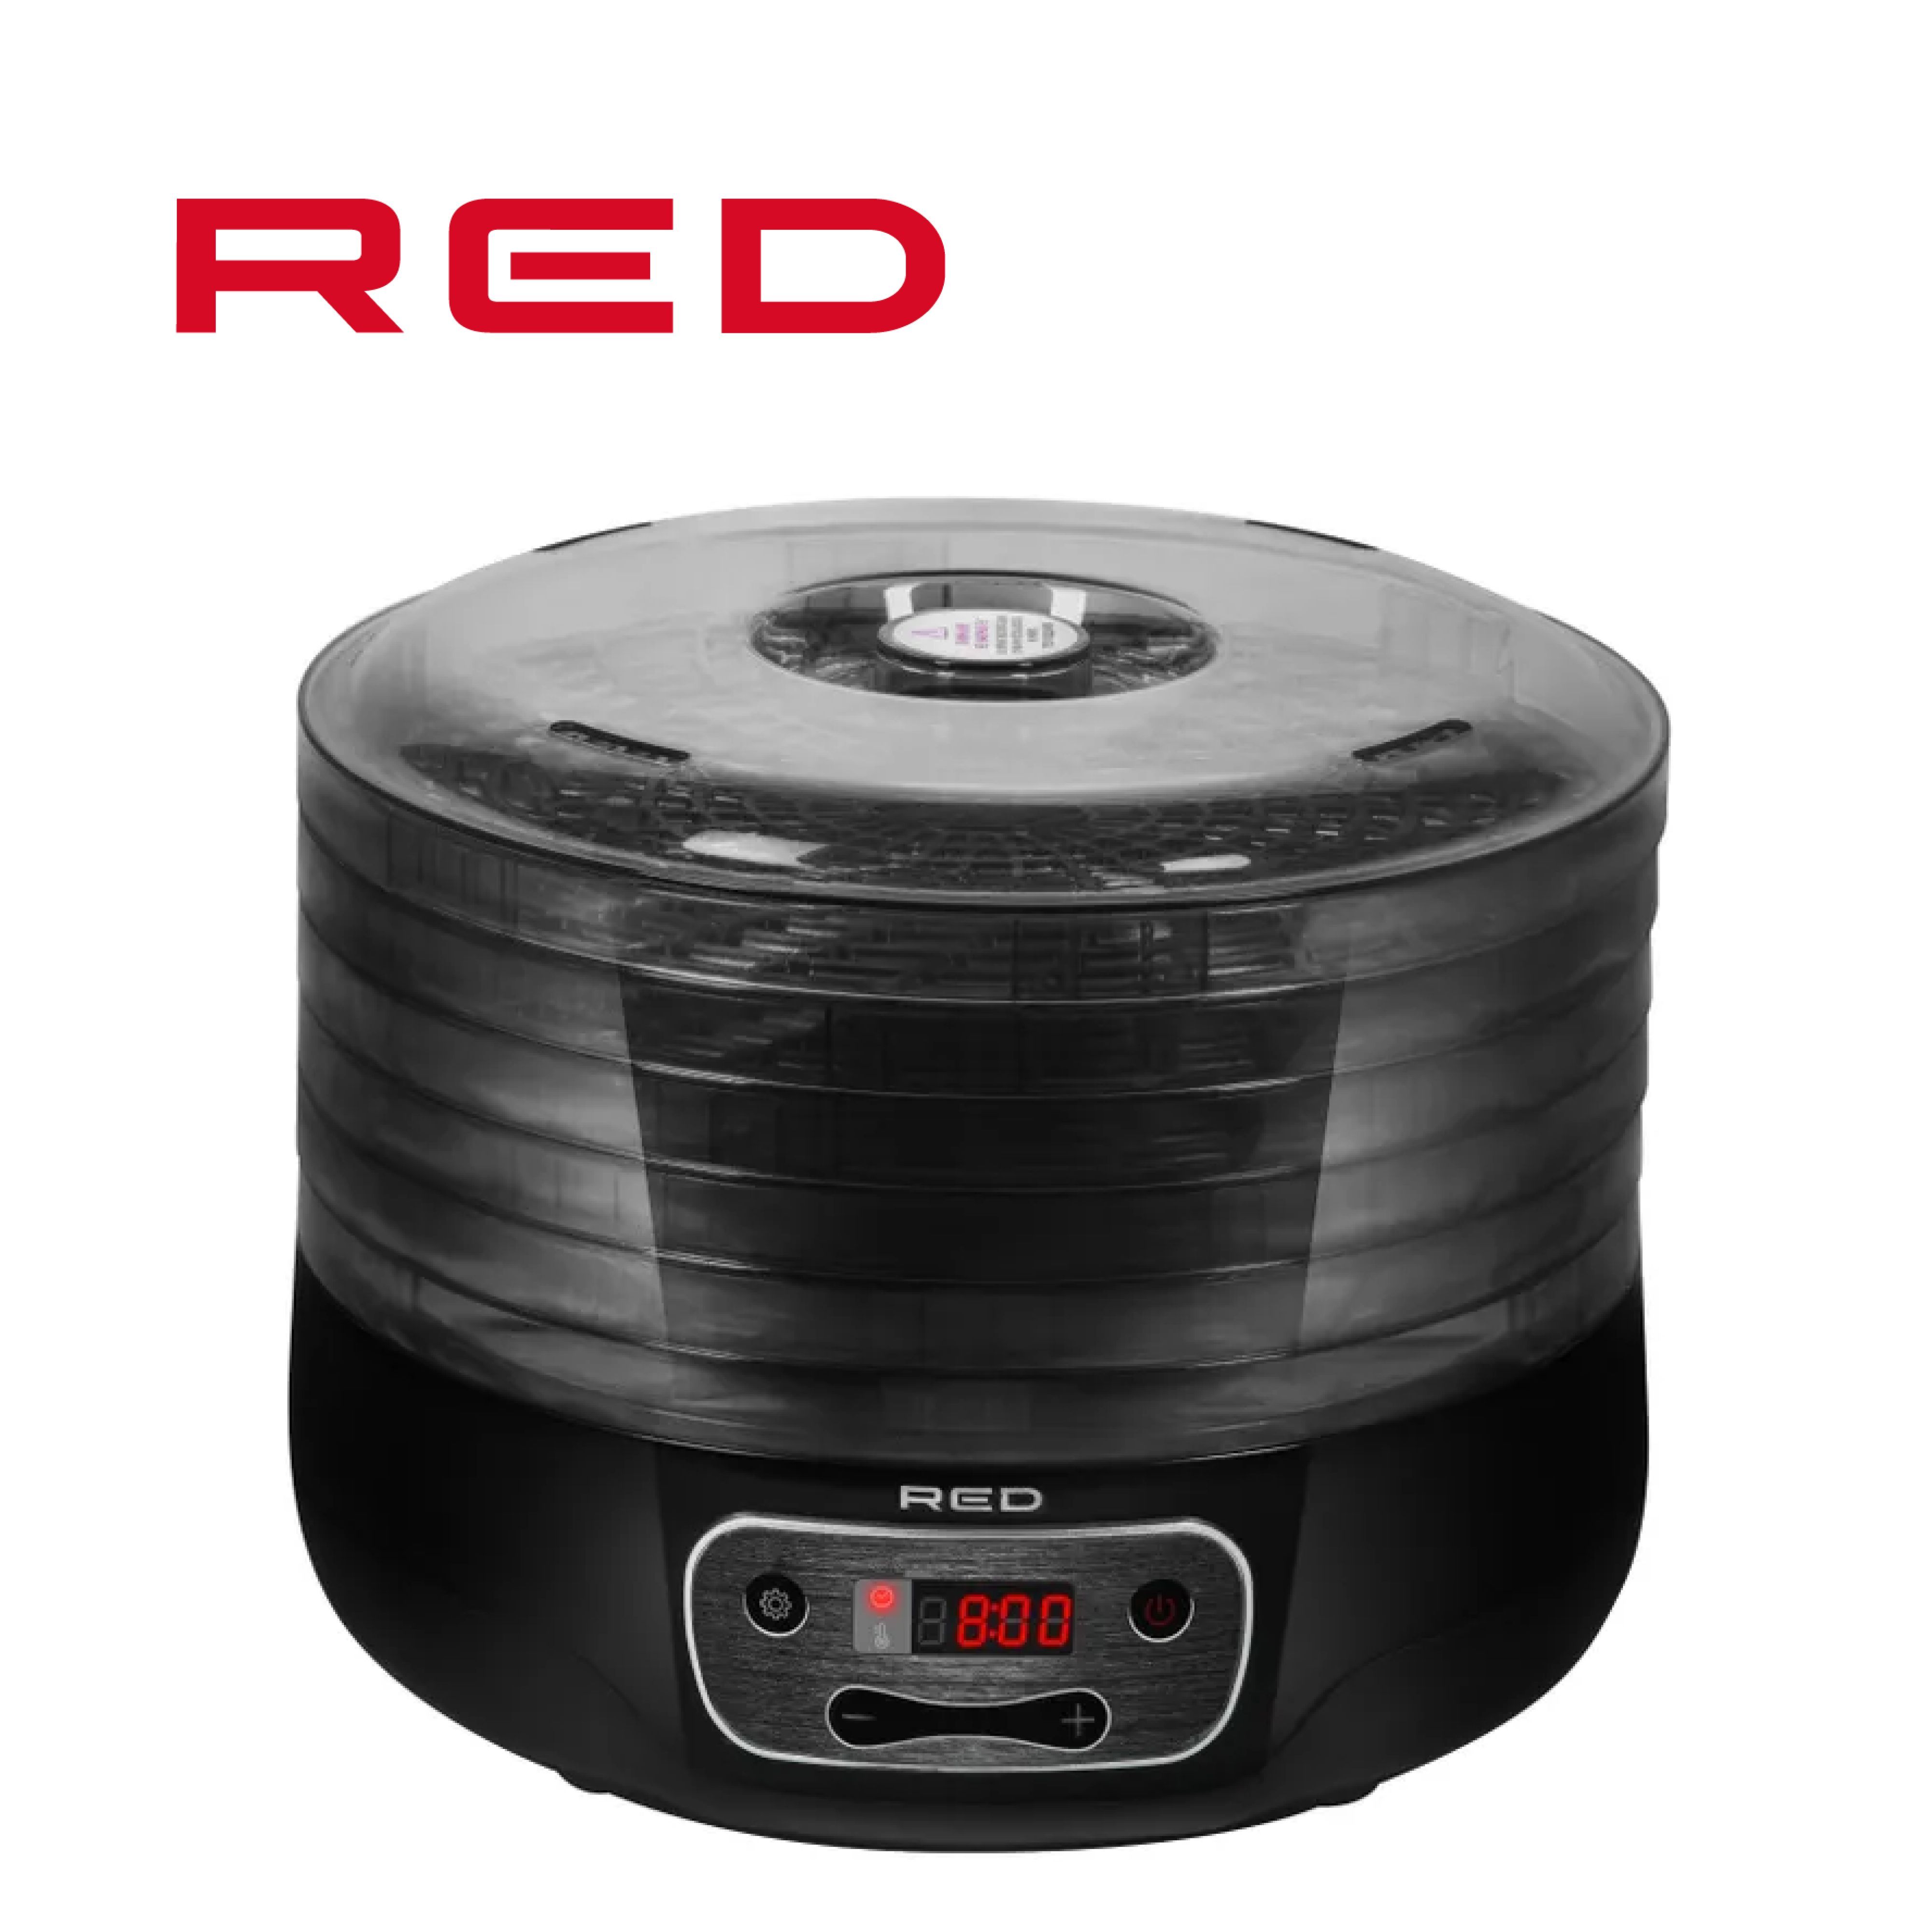 Сушка для фруктов Red solution RFD-0151. Электросушилка редмонд. Сушилка для овощей Redmond. RHF-3340 Red solution.